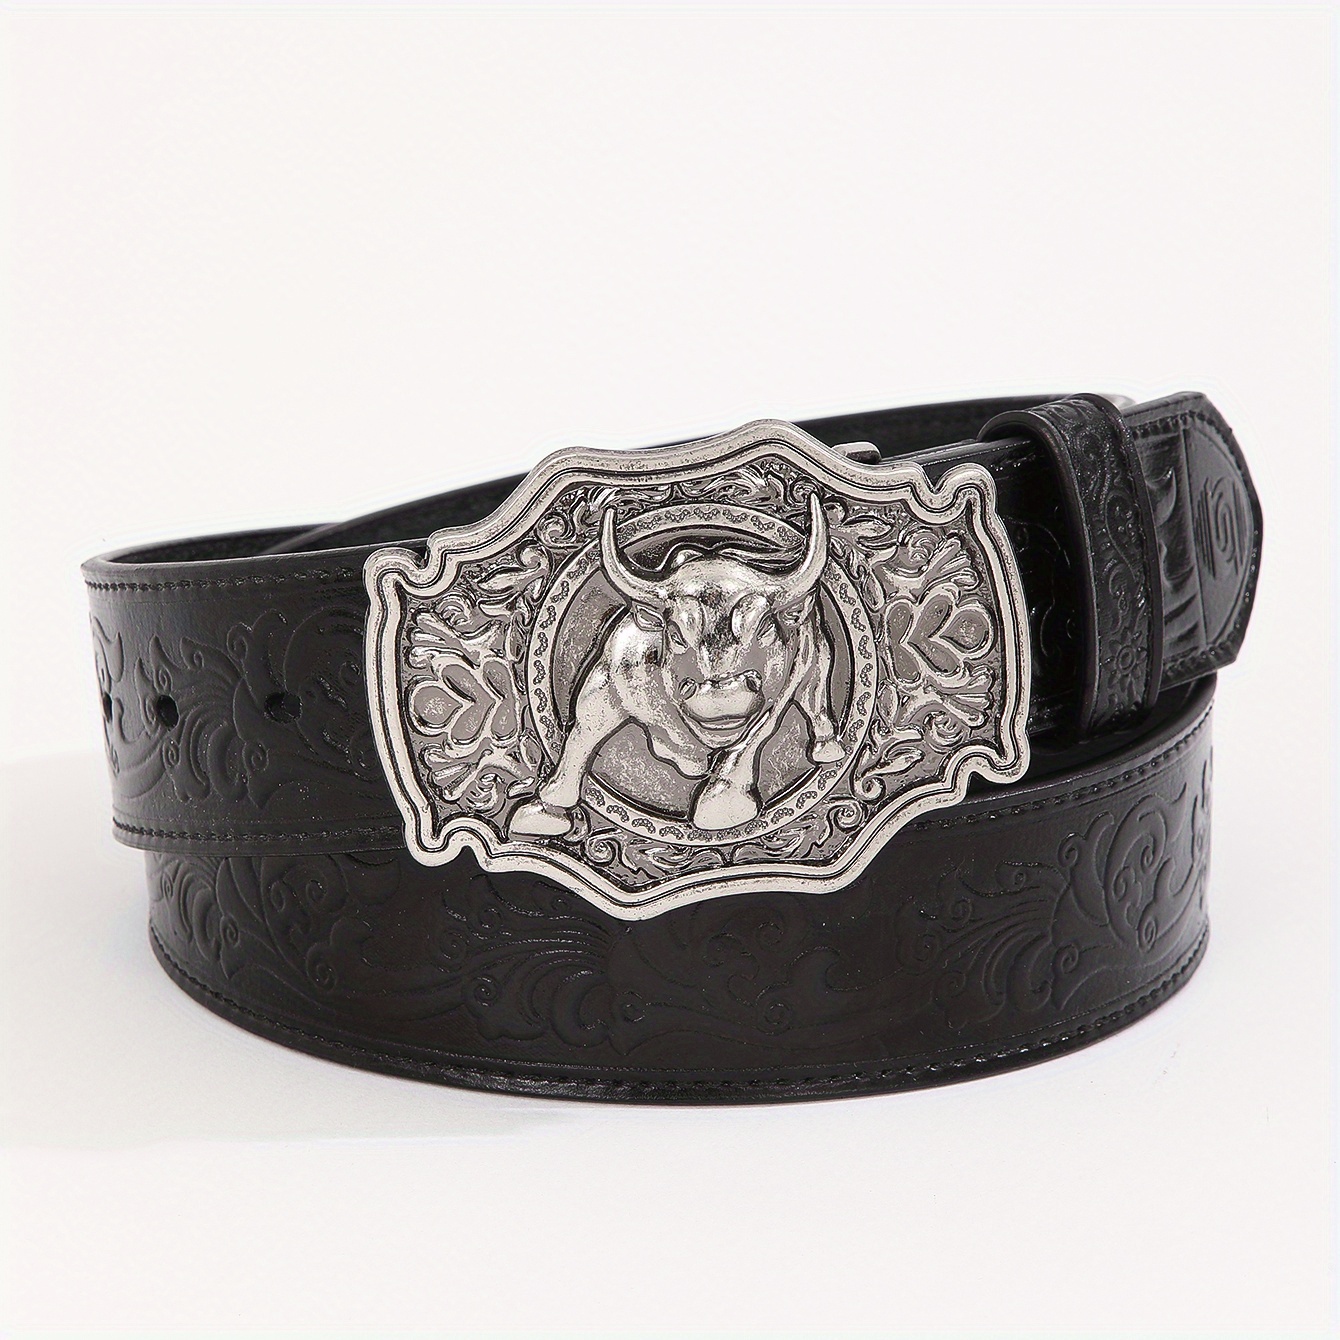 Cinturón de cuero PU para hombre, cinturones de mujer con hebilla de Pin,  cinturón de cintura de ves Fernando Cinturón de mujer